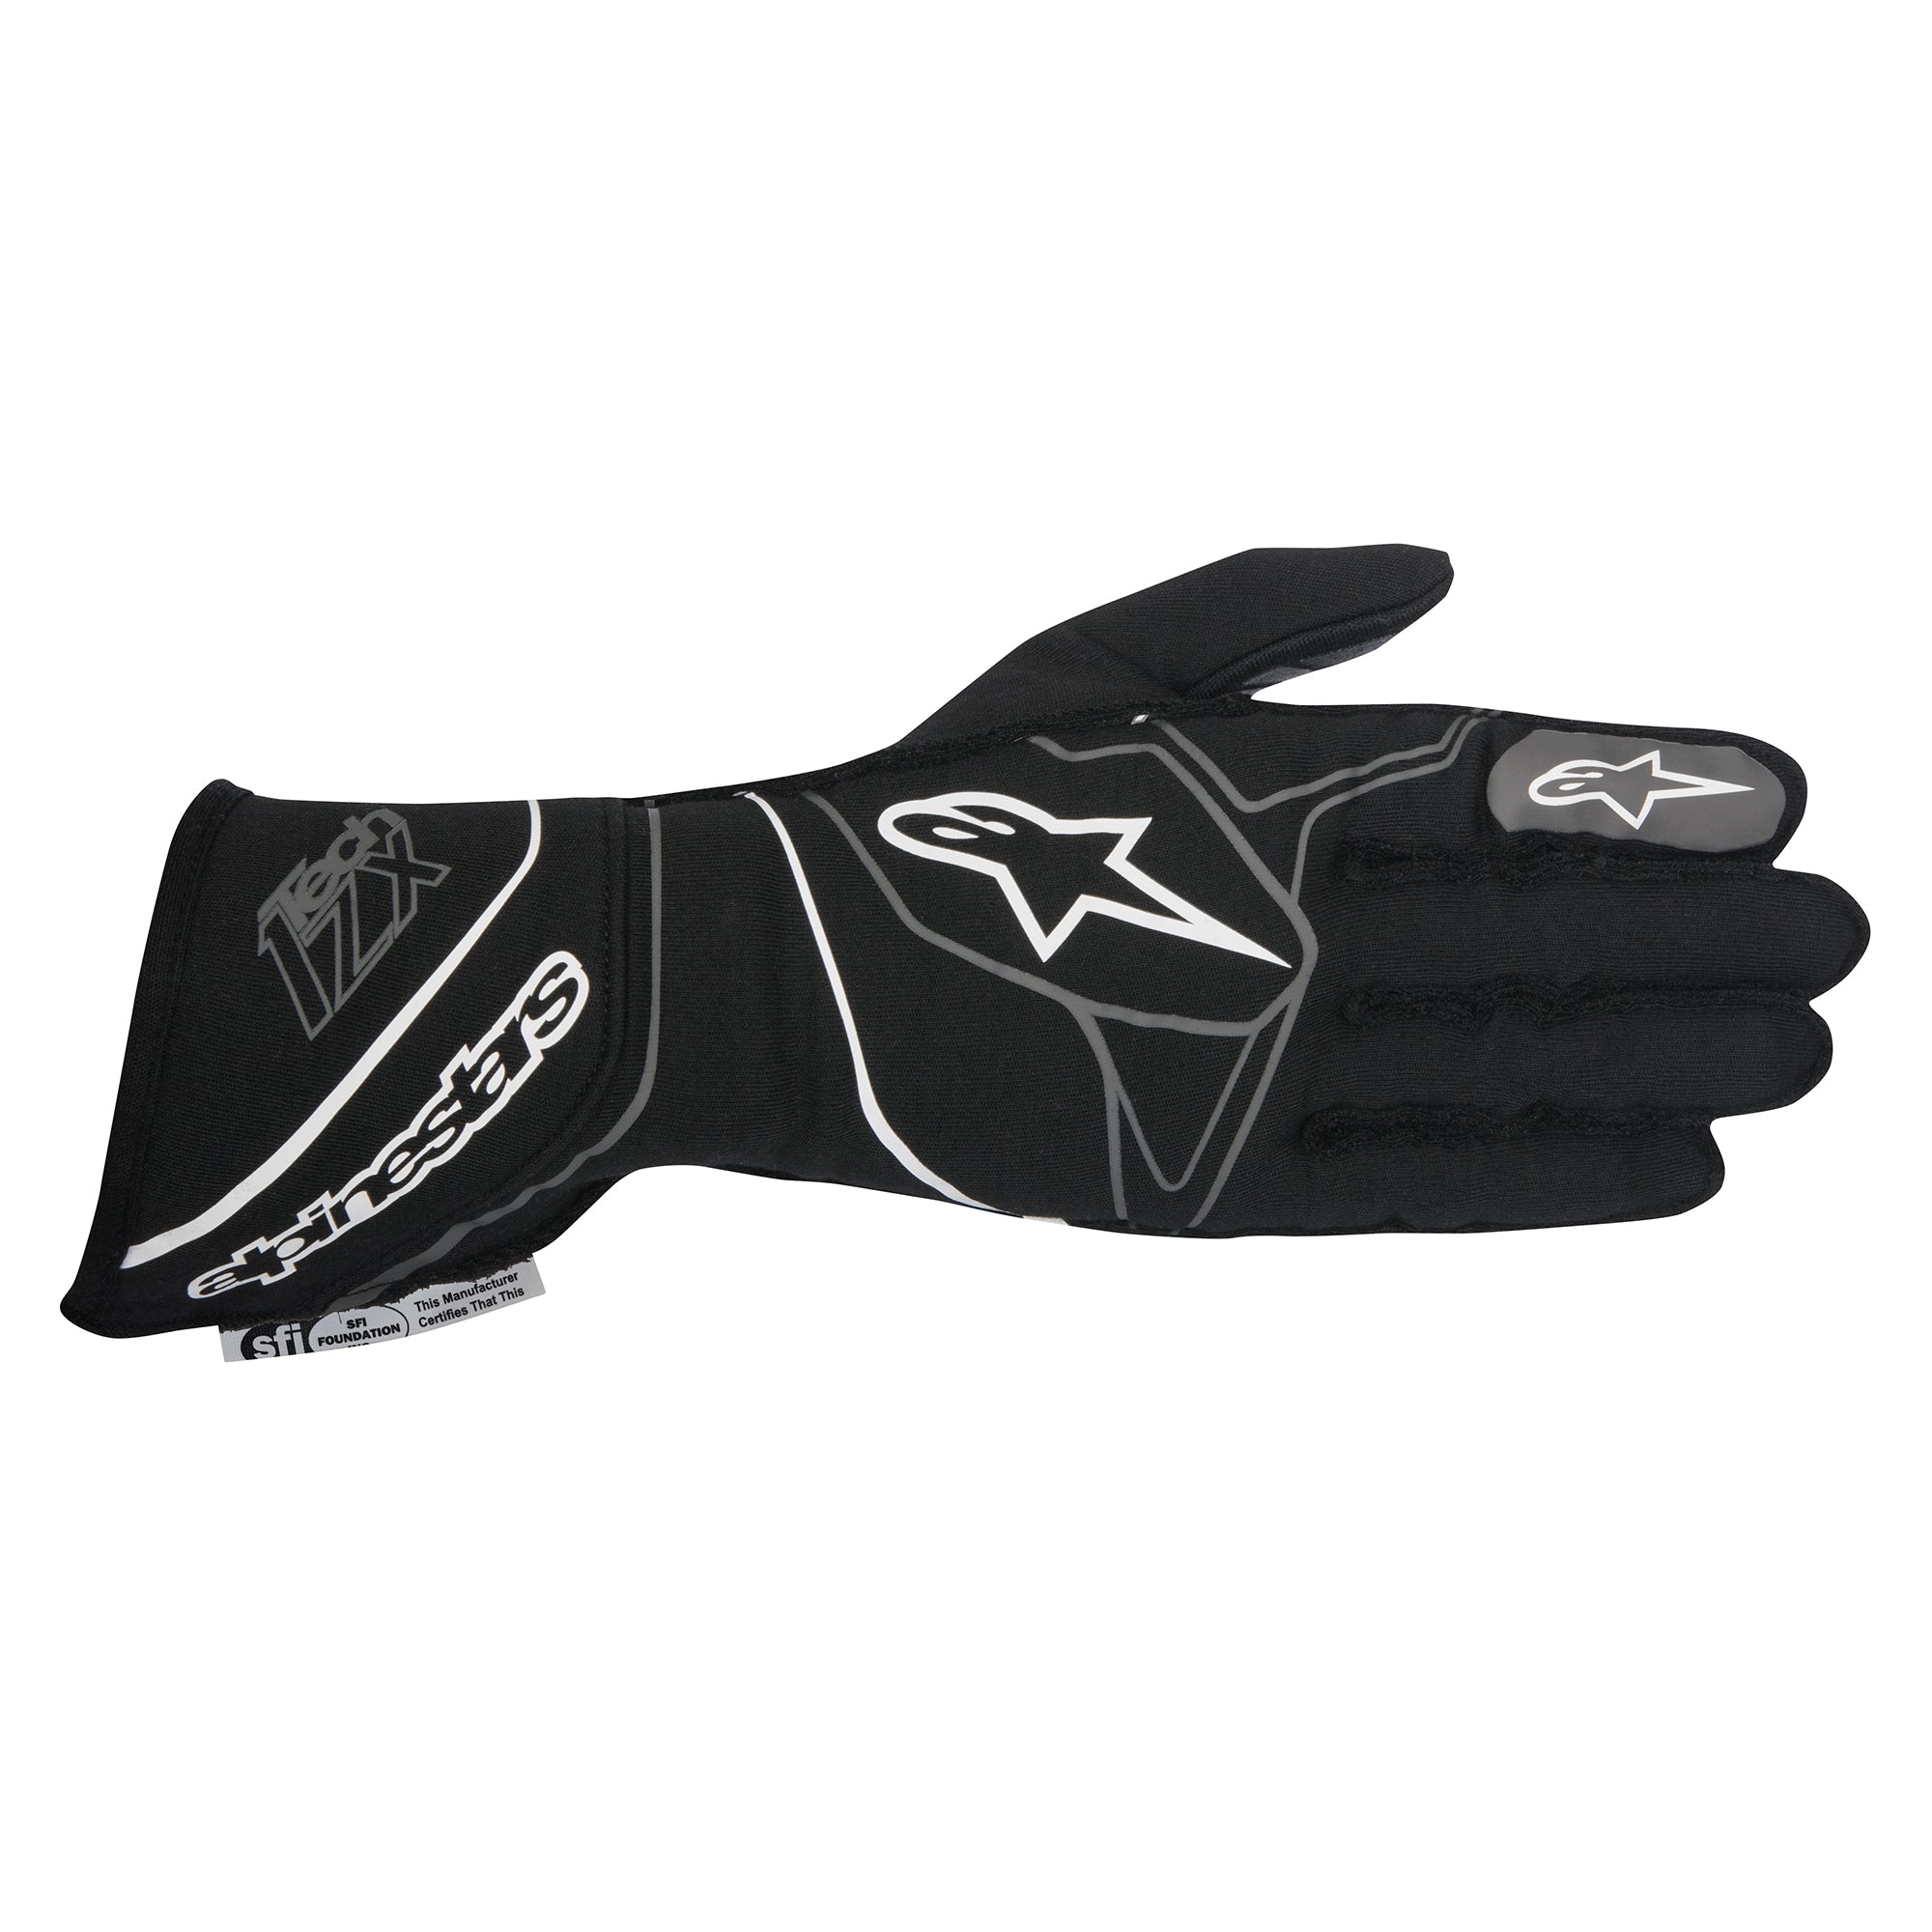 Tech-1 ZX Gloves